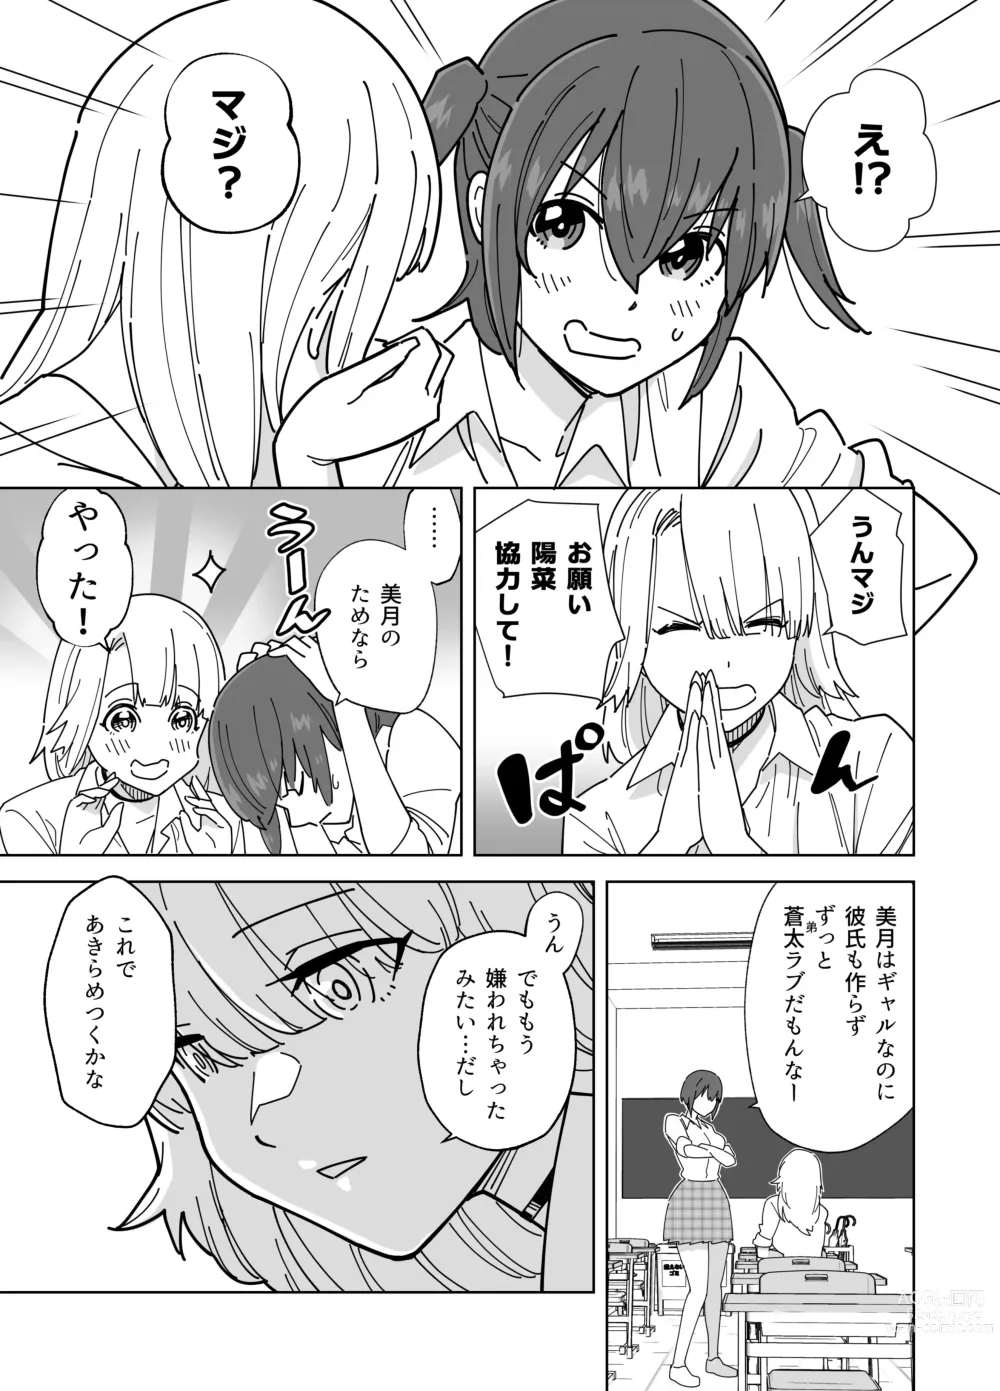 Page 4 of doujinshi Mekakushi Kossori Irekawatte Otouto to Yatte Mita